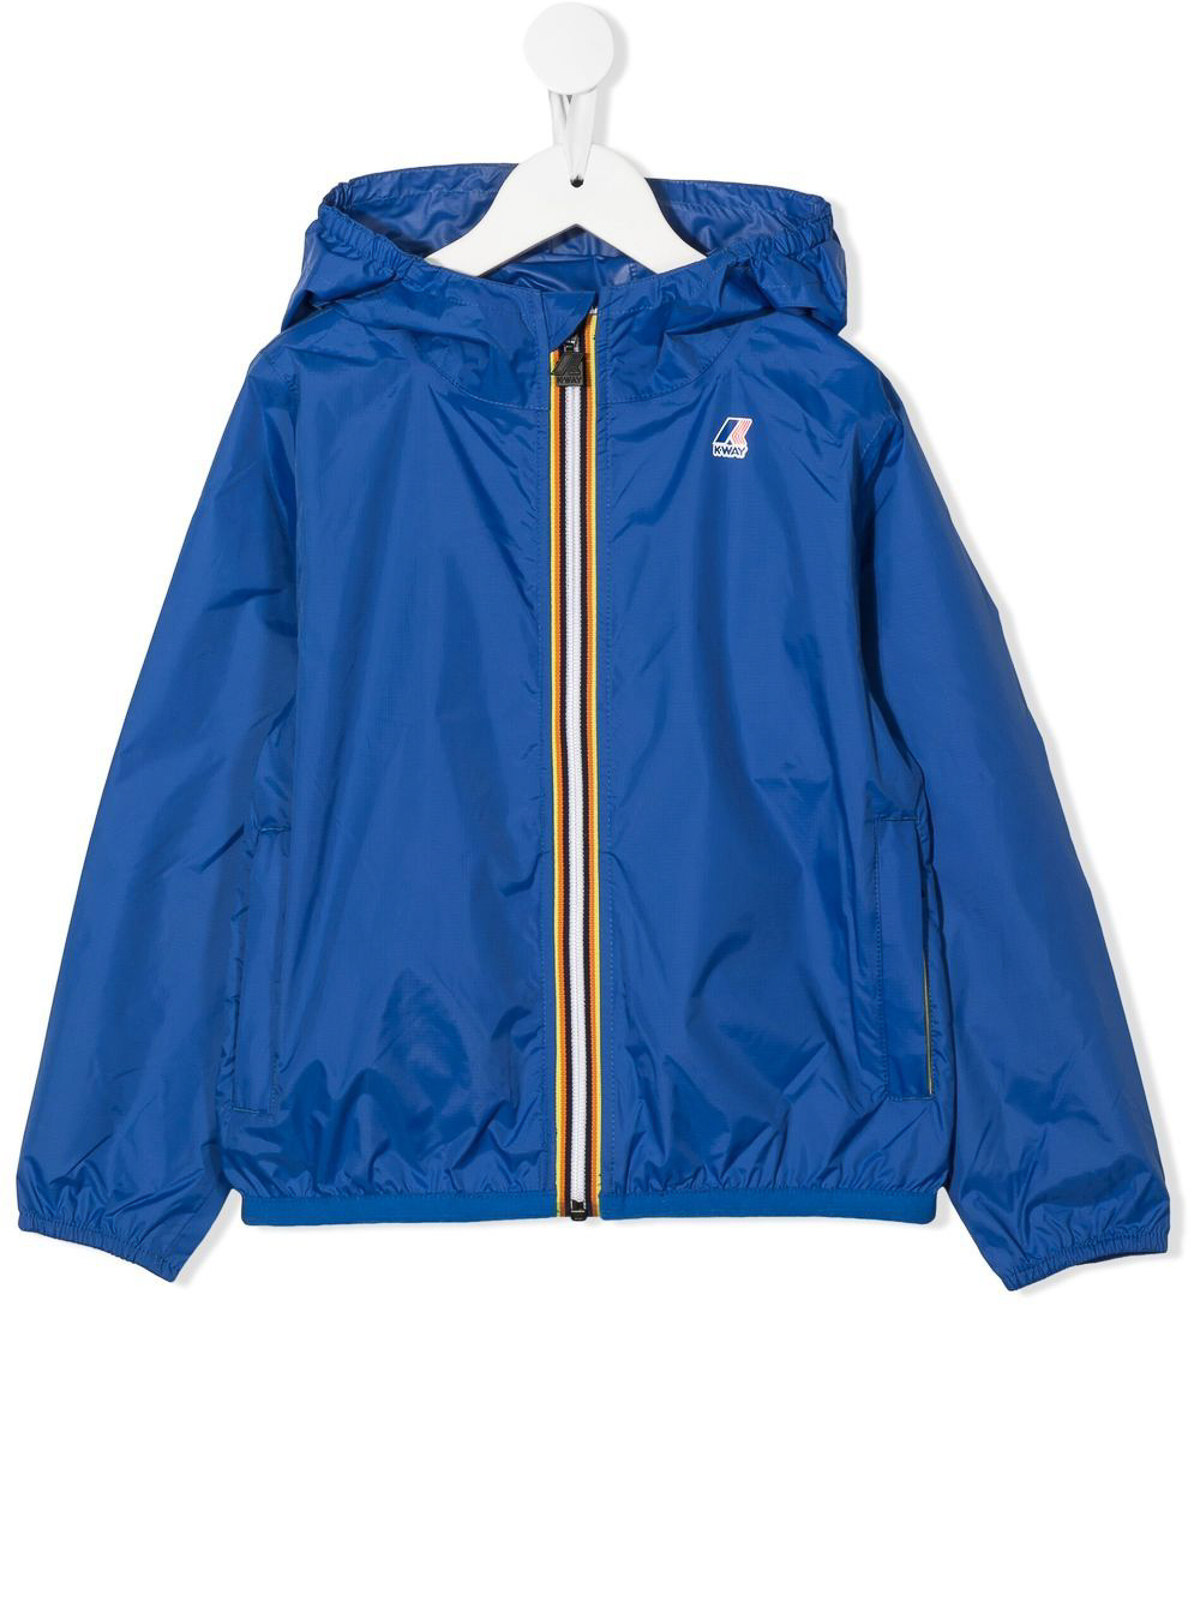 K-way Rain Jacket With Stripe Trim In Blue